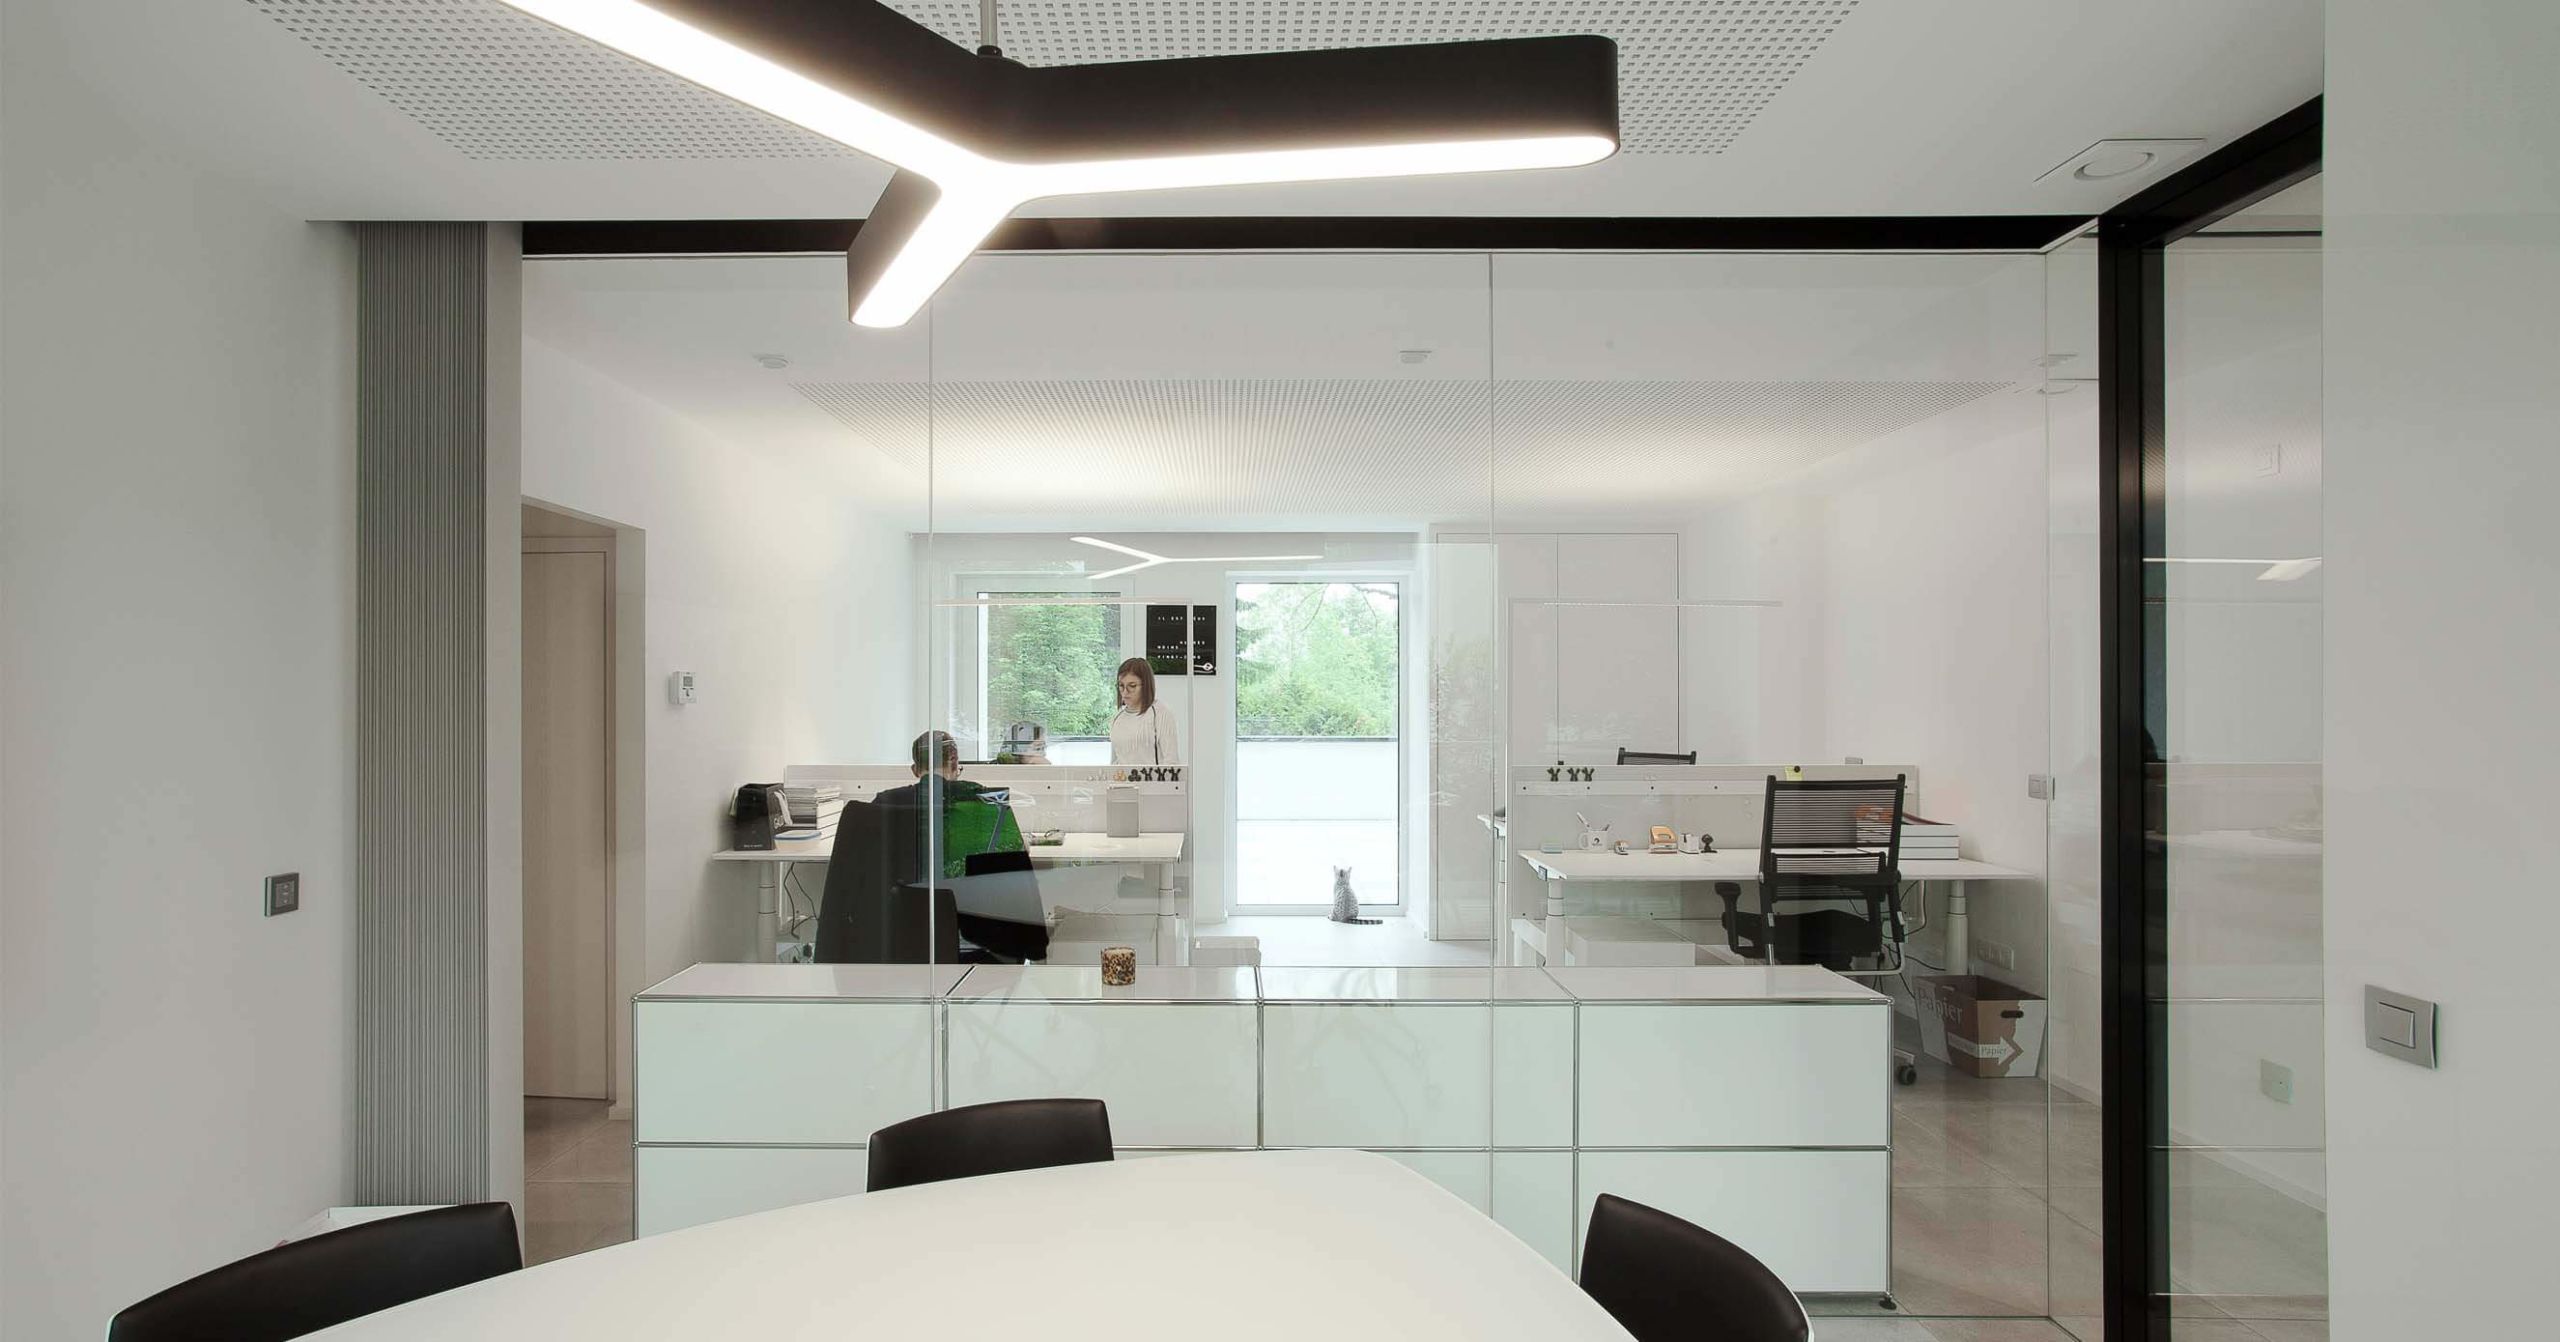 Les cloisons vitrées placées entre les différents bureaux donnent une sensation d'espace et permettent de profiter un maximum de la luminosité extérieure.